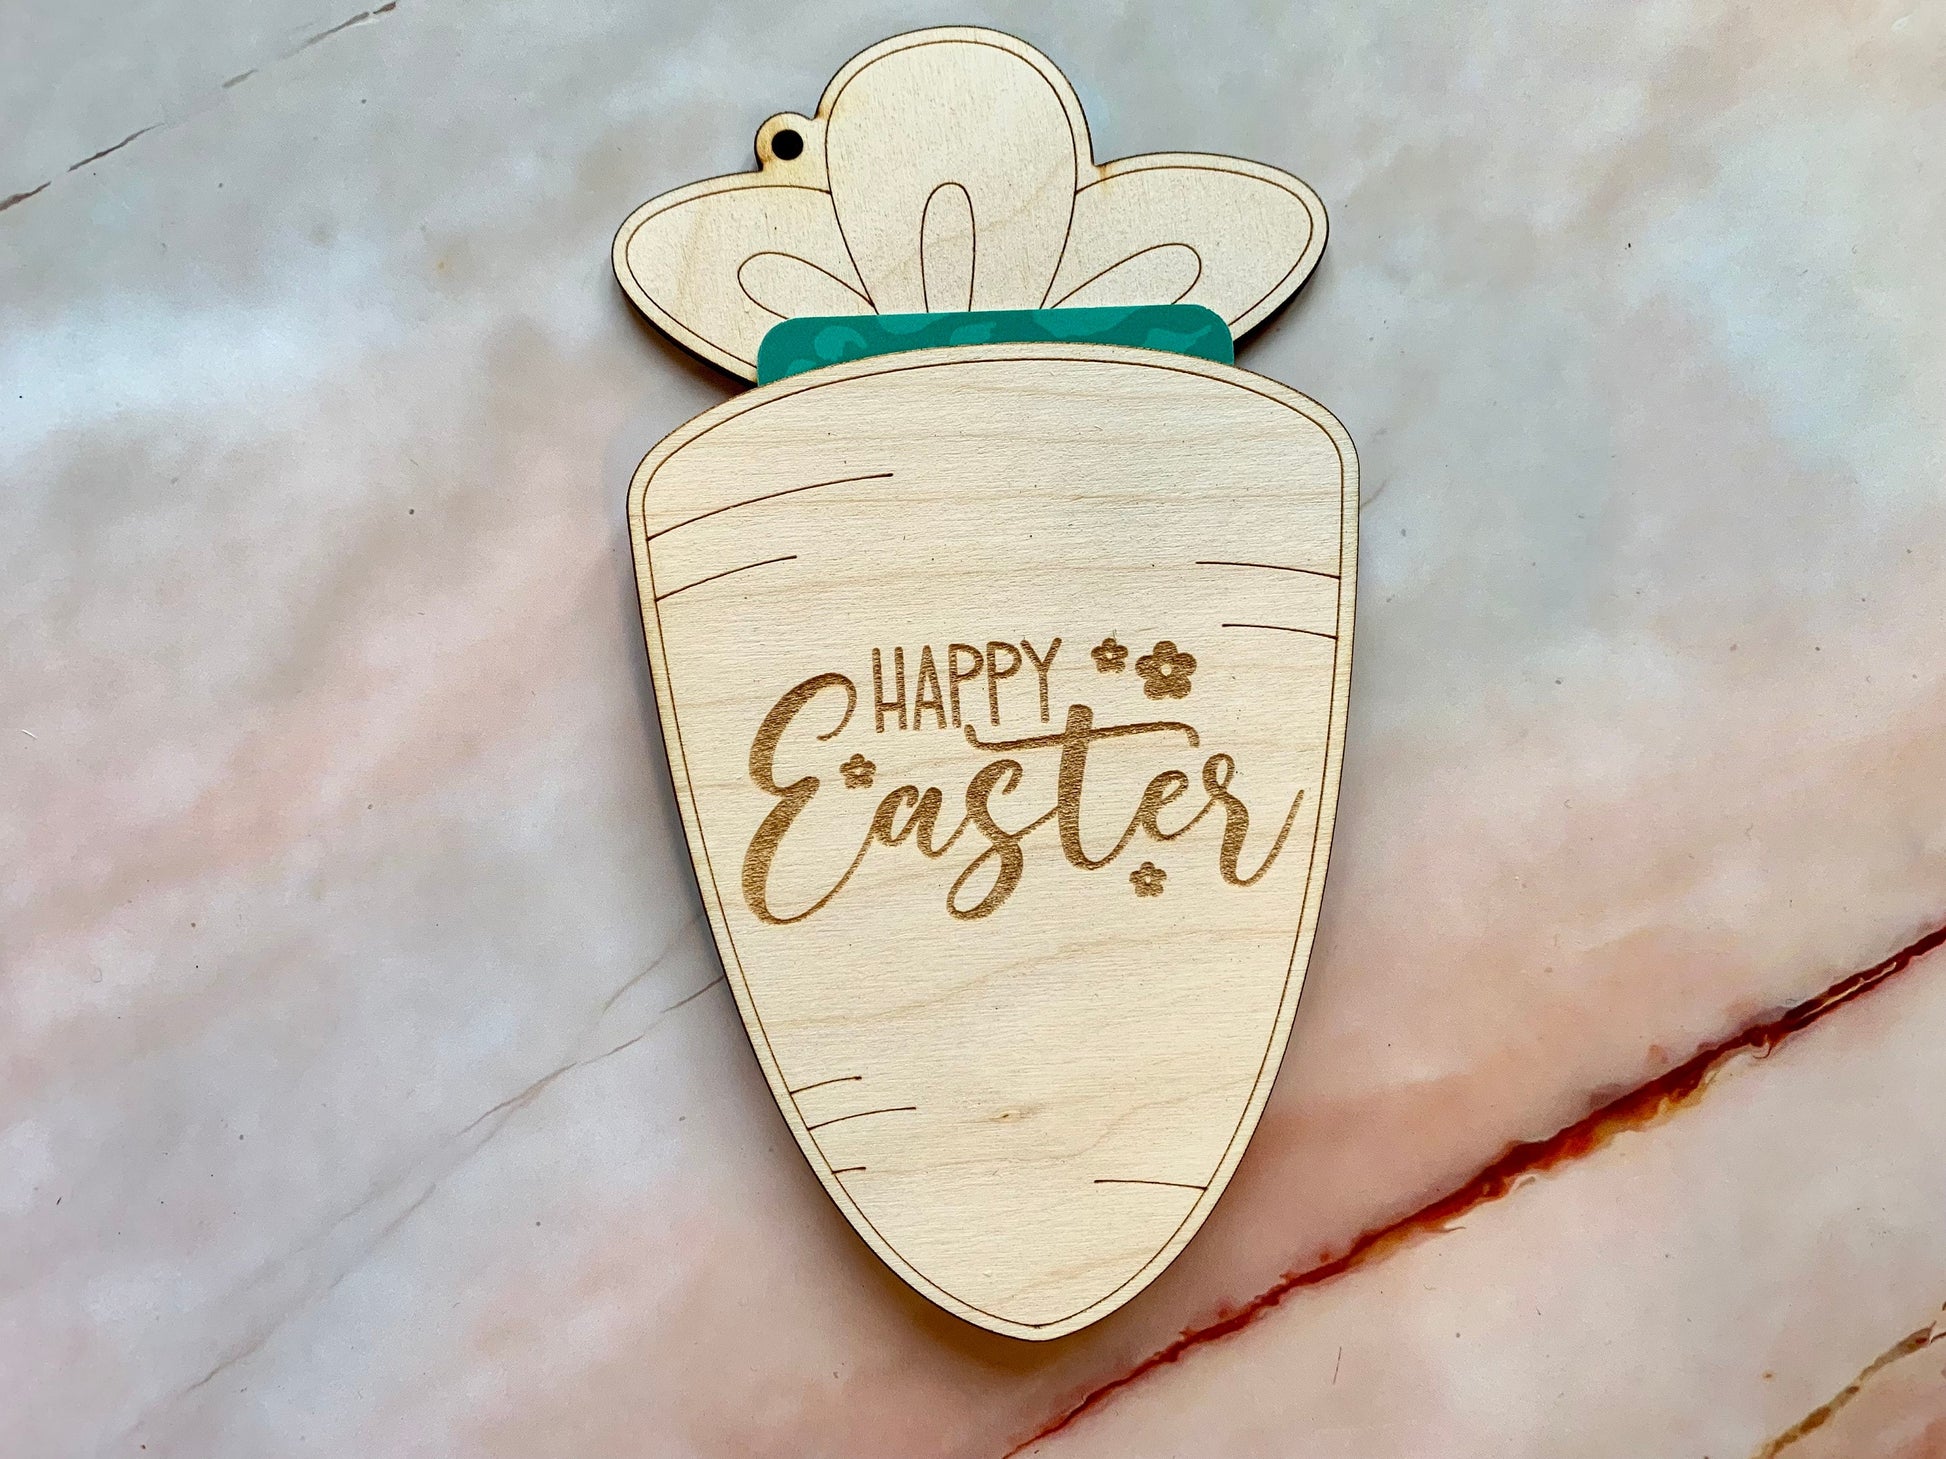 Personalised Engraved Easter Gift Card Holder, Gift Voucher Holder, Easter Egg Basket, Carrot for Easter Bunny - Resplendent Aurora